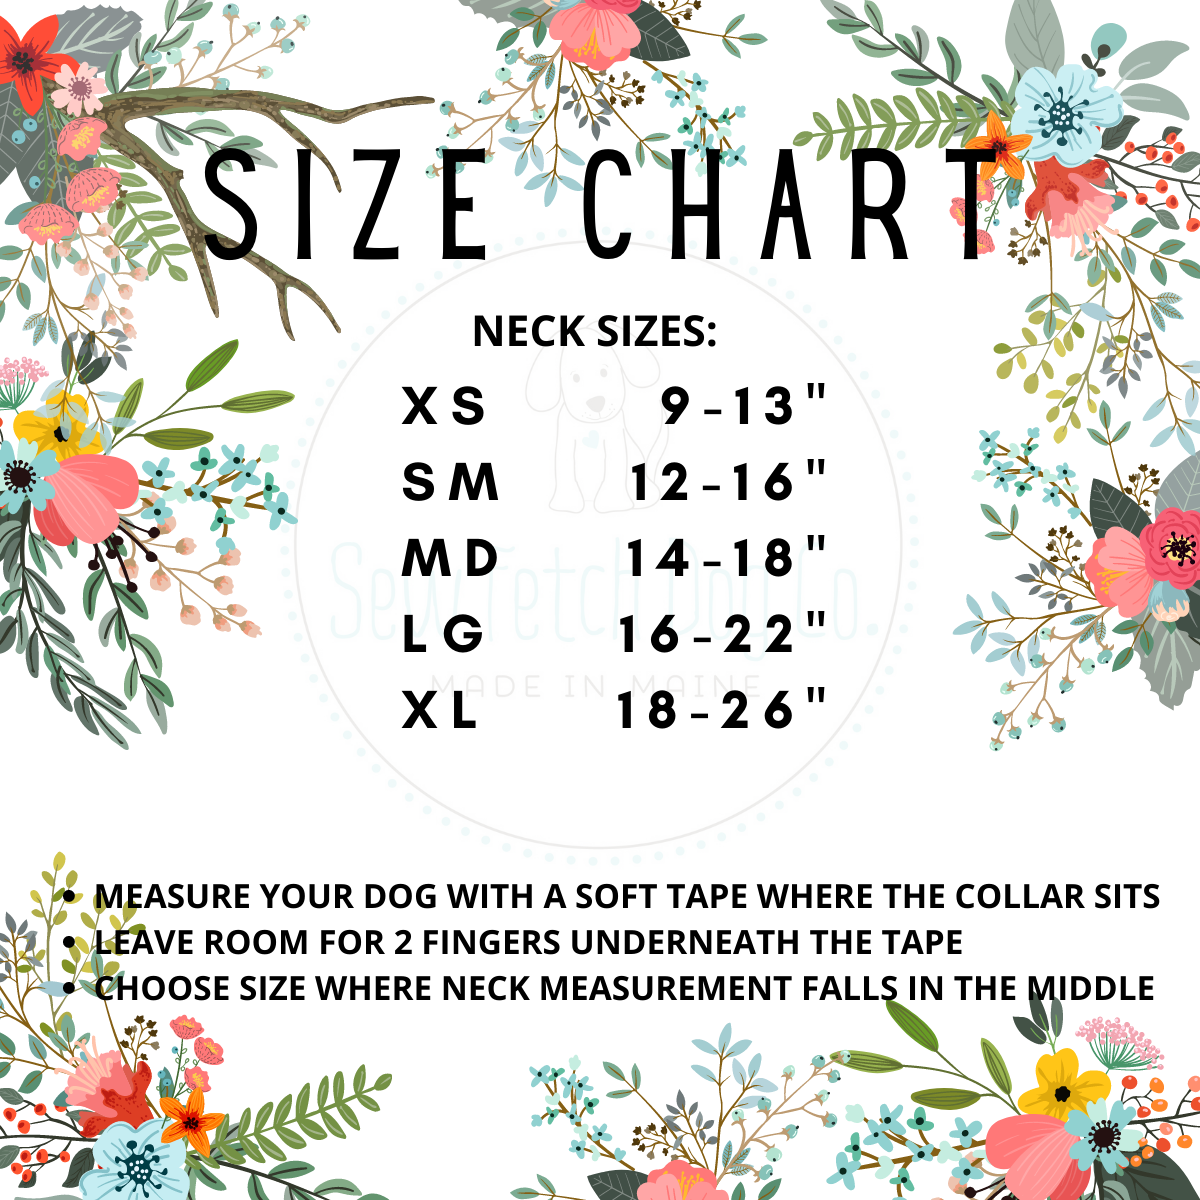 Sierra Floral Dog Collar - Sew Fetch Dog Company